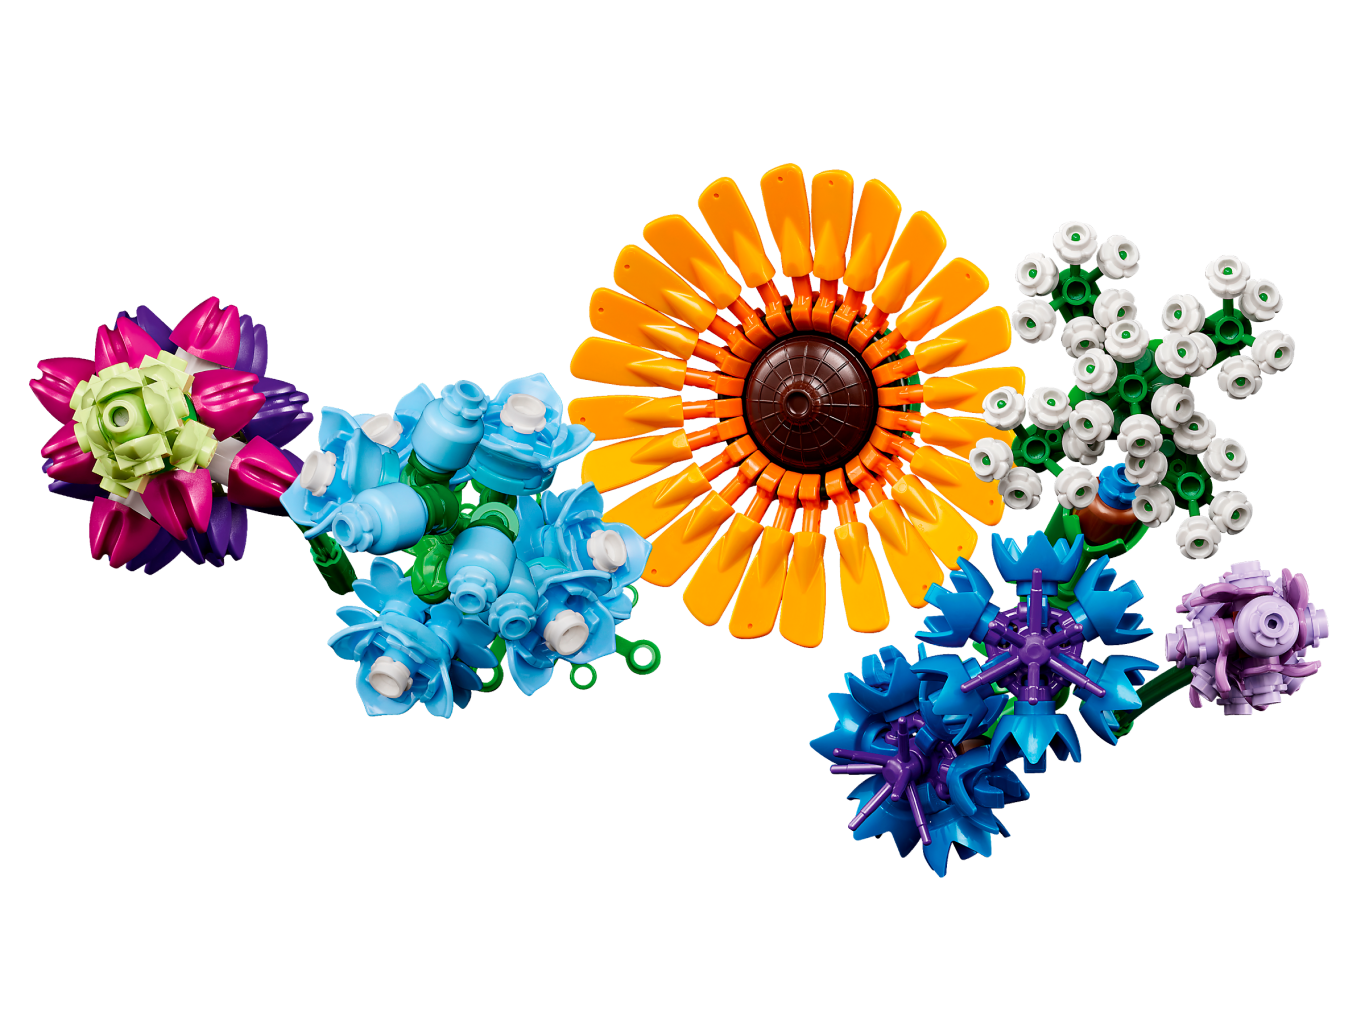 Lego - Le bouquet de fleurs sauvages - Ombelle Fleuriste